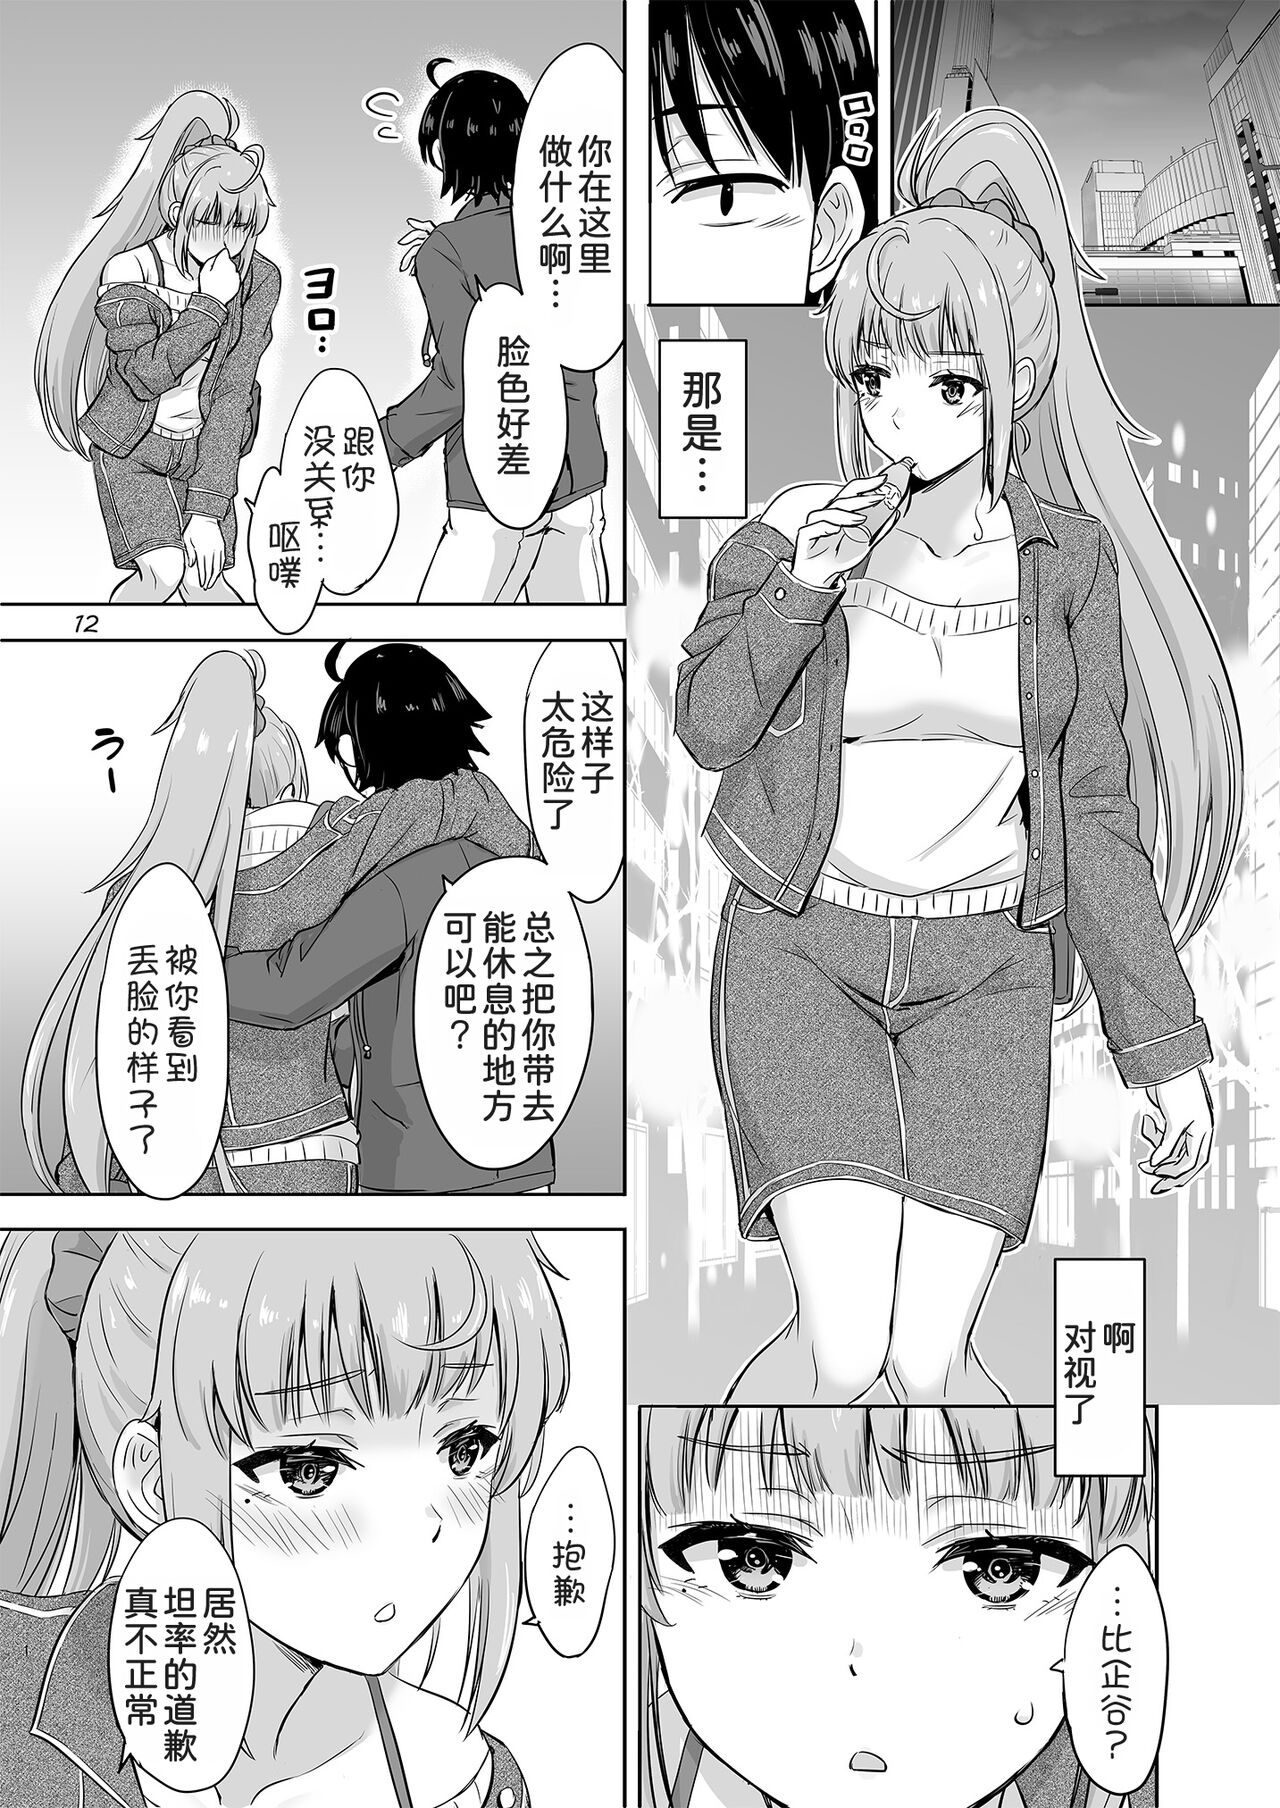 Dokyusei-tachi to no Sukoshi Ibitsu na Nikutai Kankei. - Yumiko miura & Saki kawasaki each have sex with Hachiman.